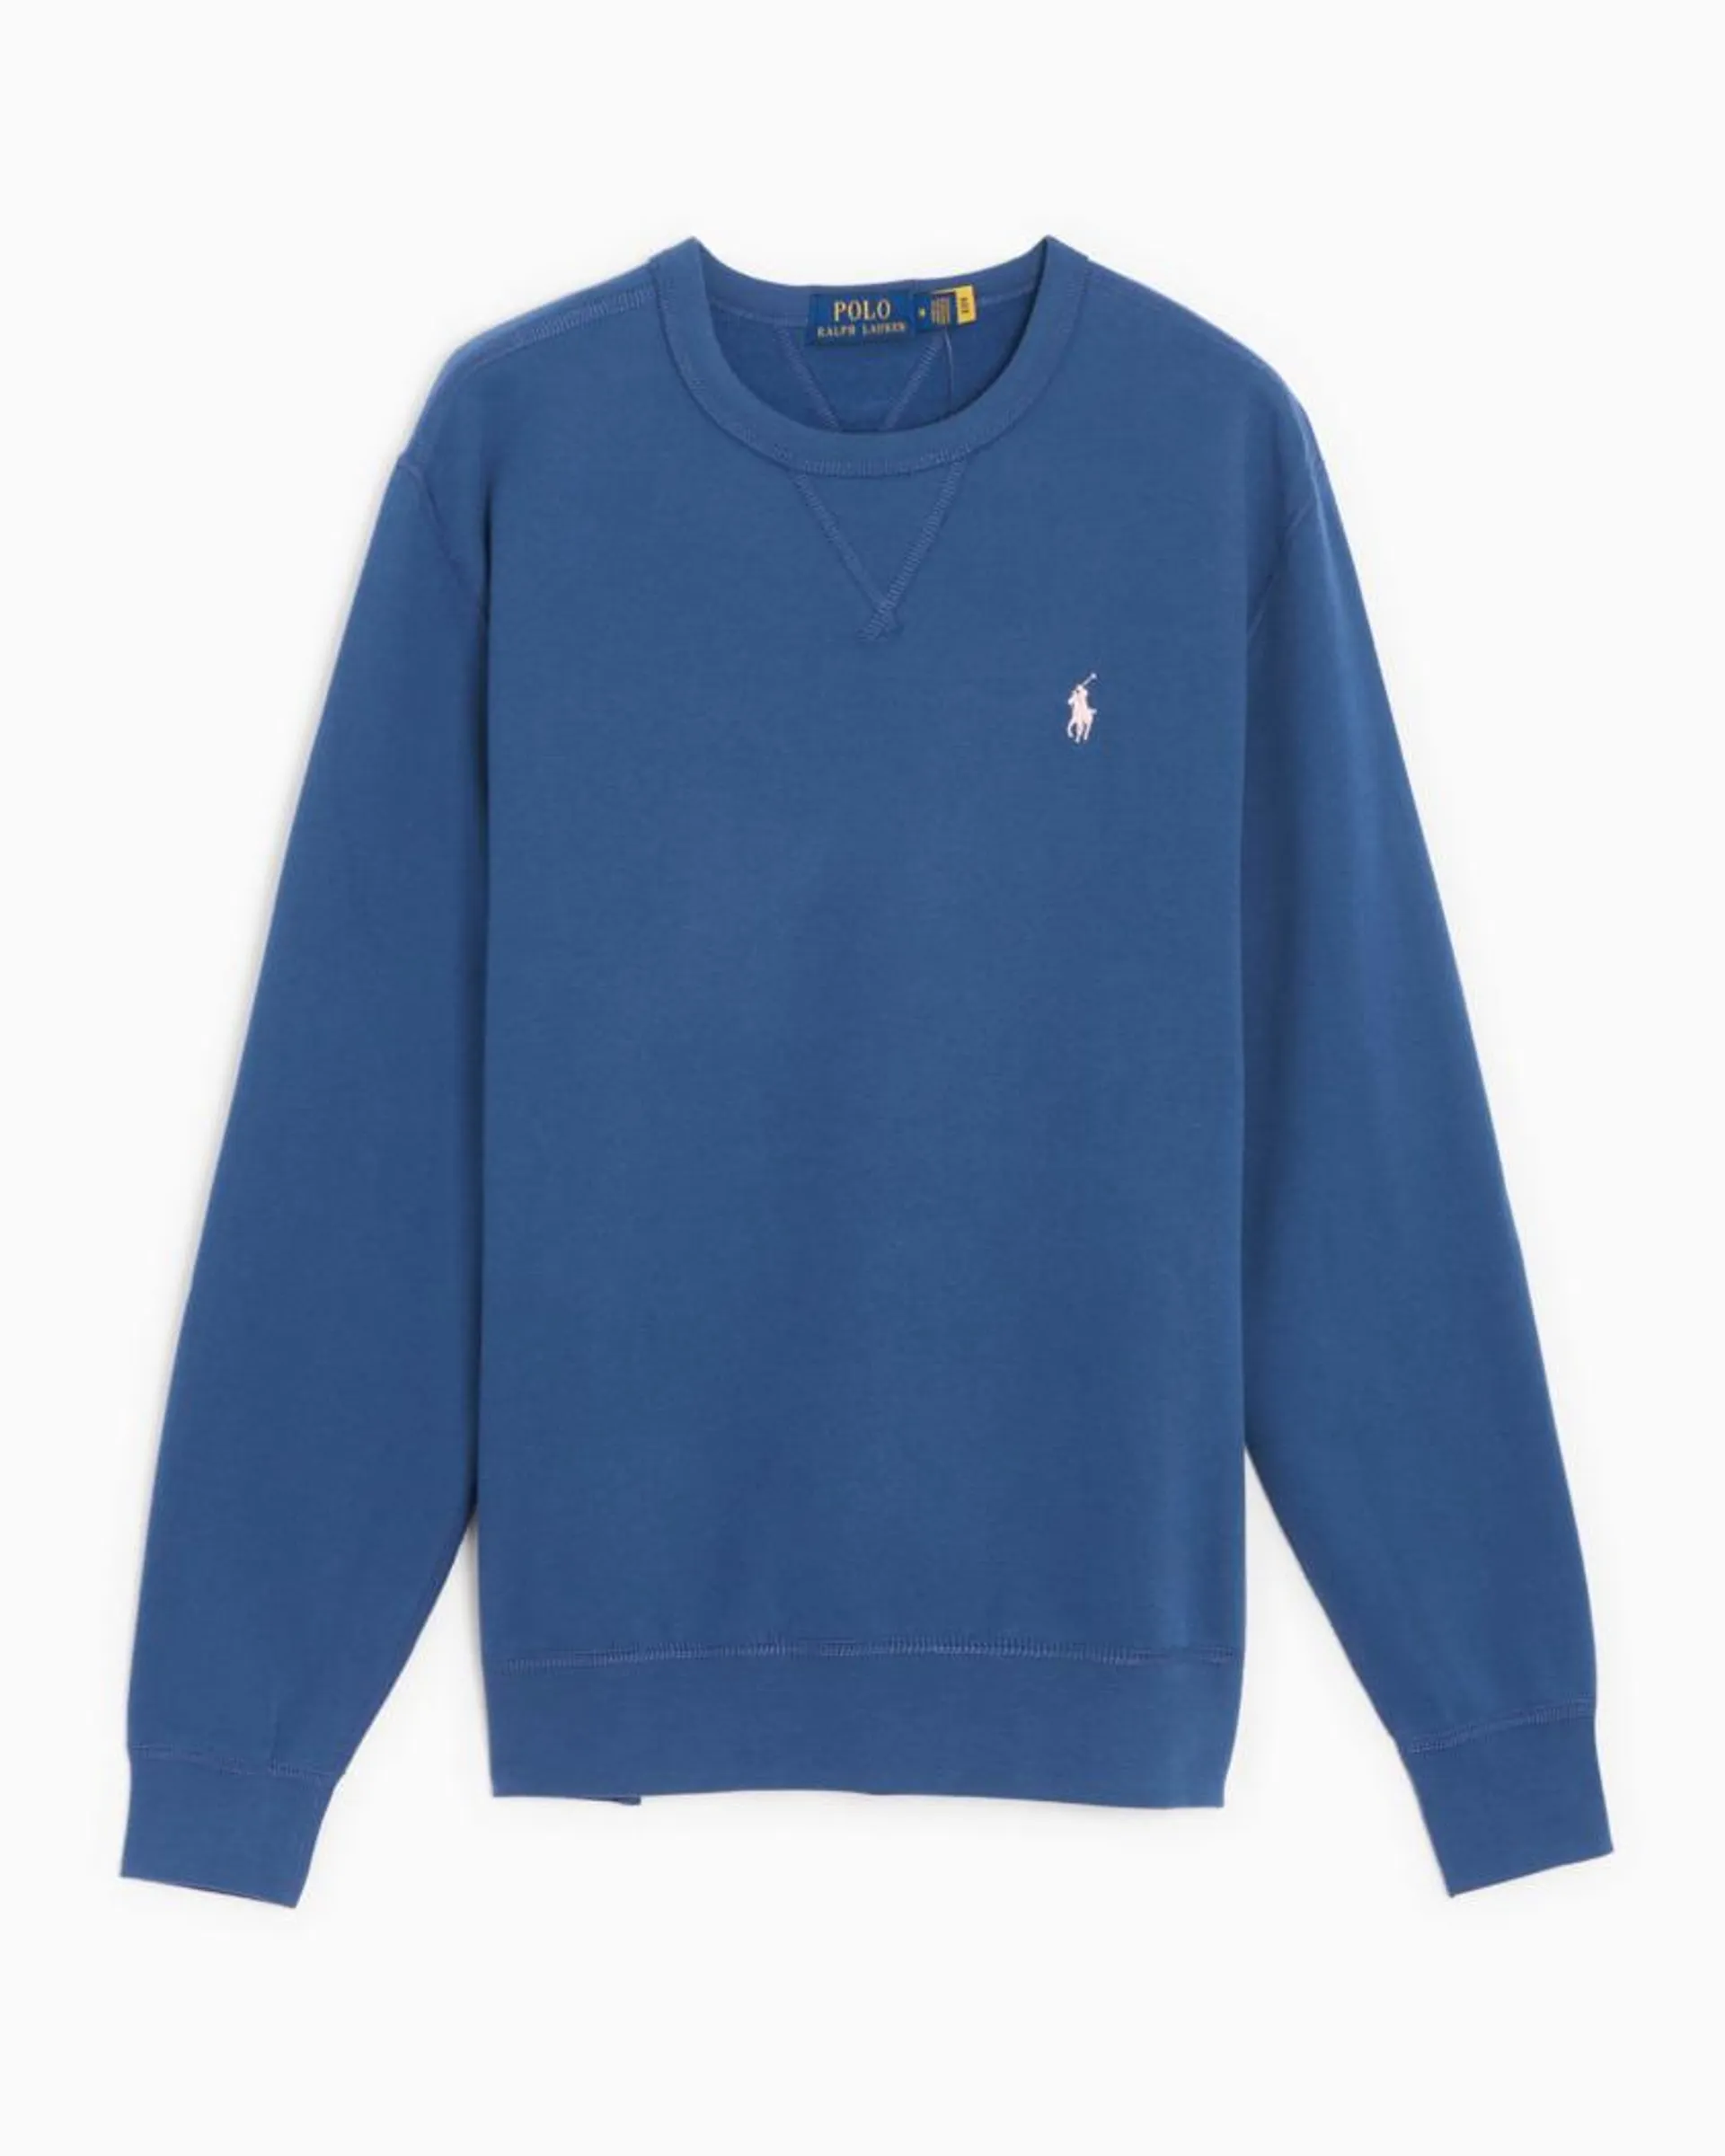 Polo Ralph Lauren Classics Men's Fleece Sweatshirt